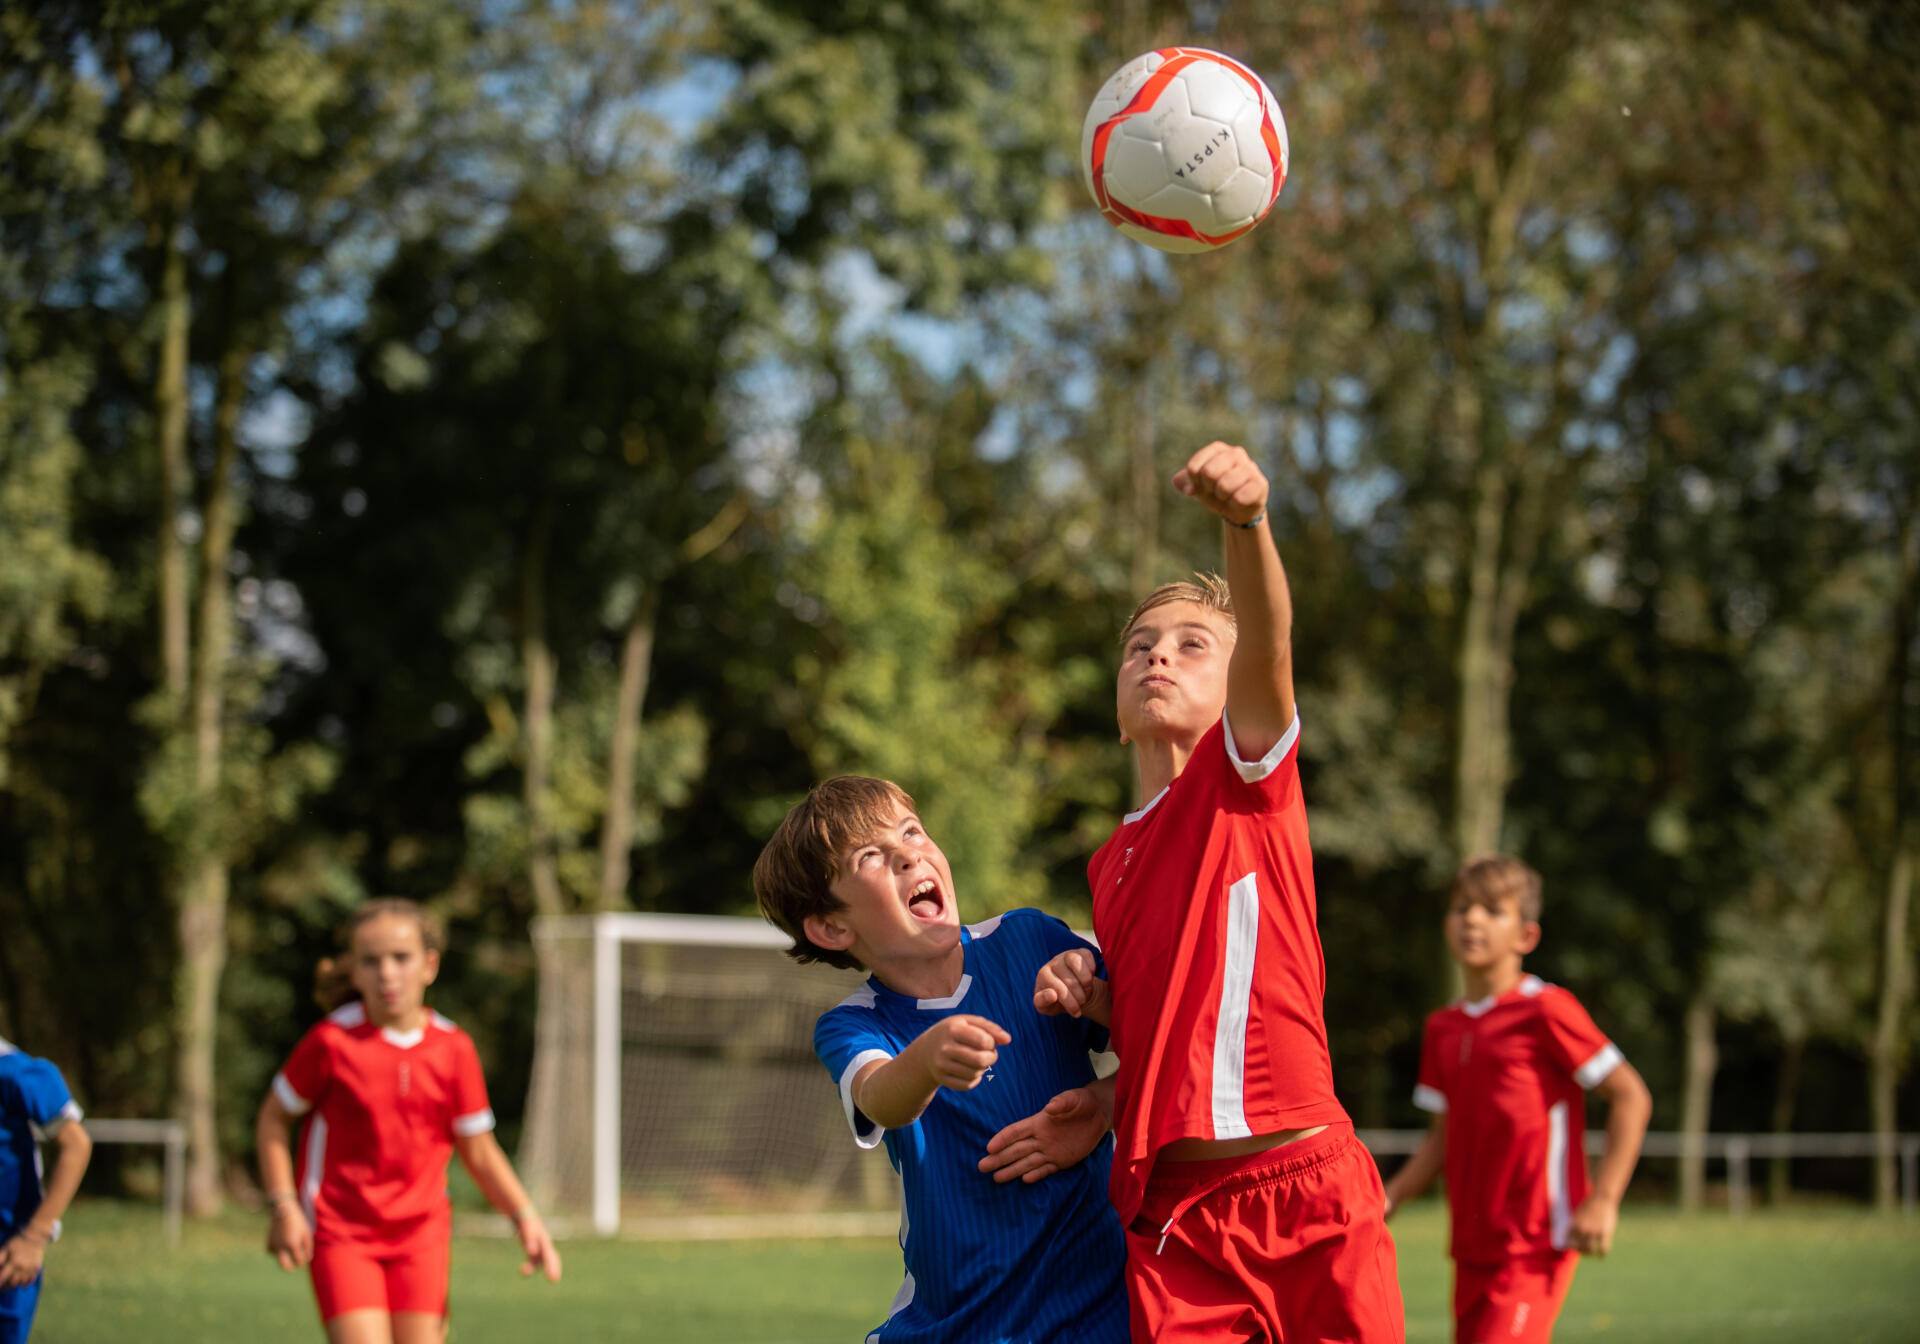 ¿Cuál es el deporte ideal para niños según su personalidad?